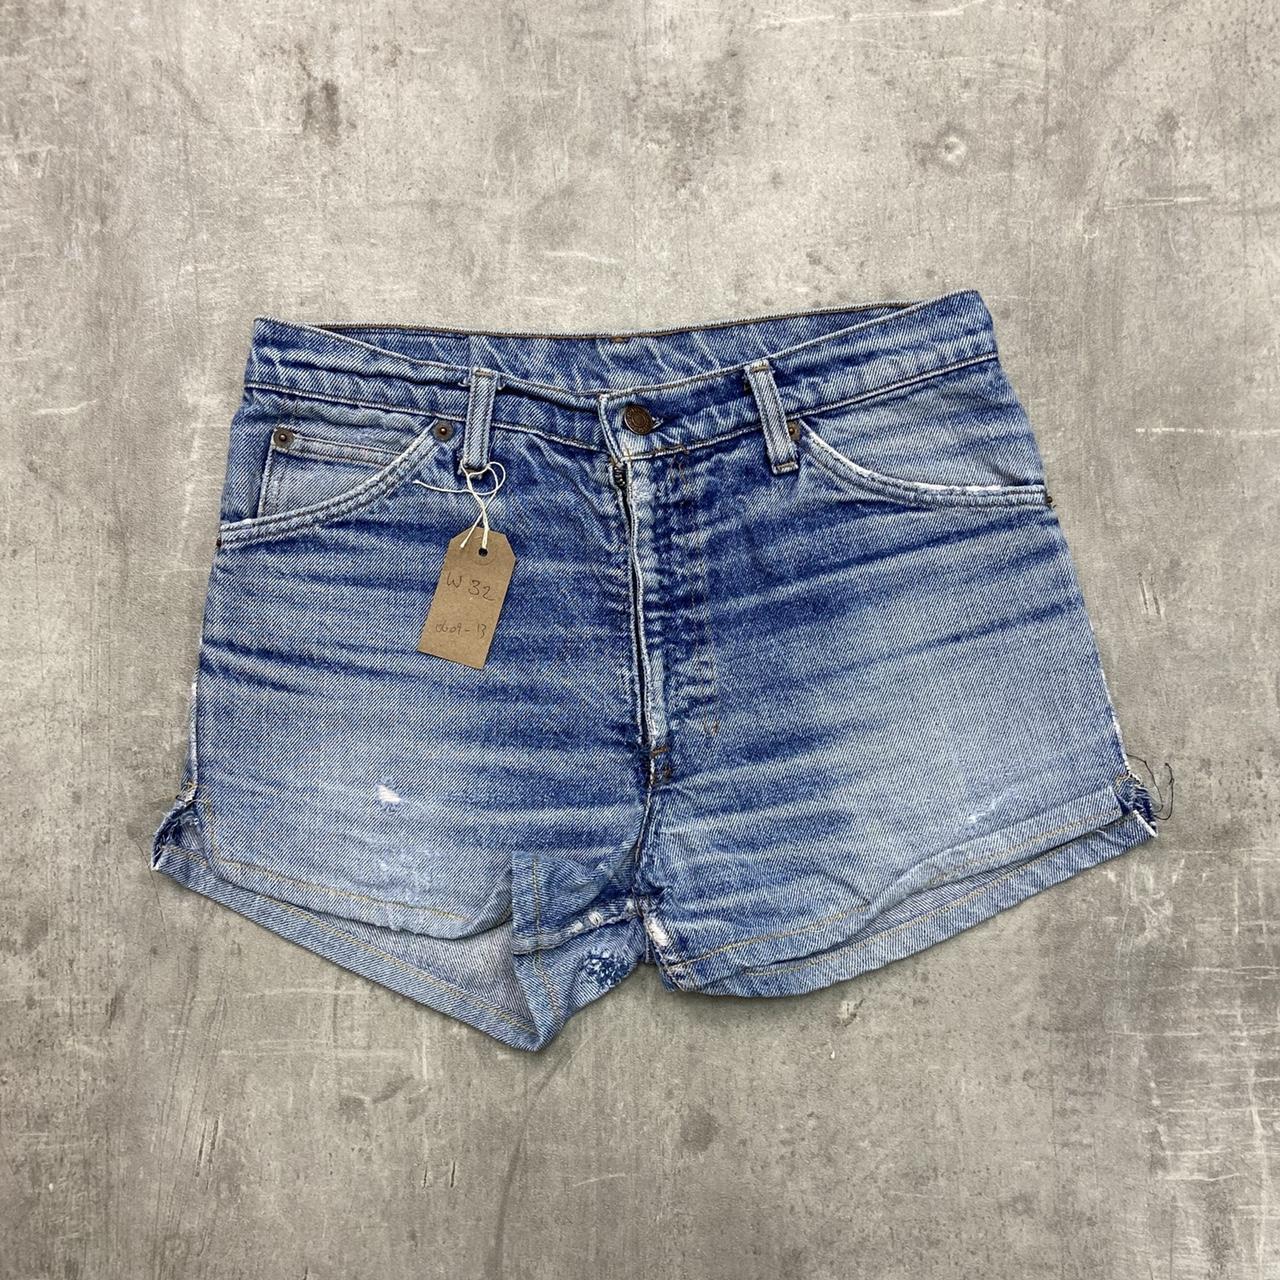 Vintage Levi’s jean shorts in a light blue wash... - Depop